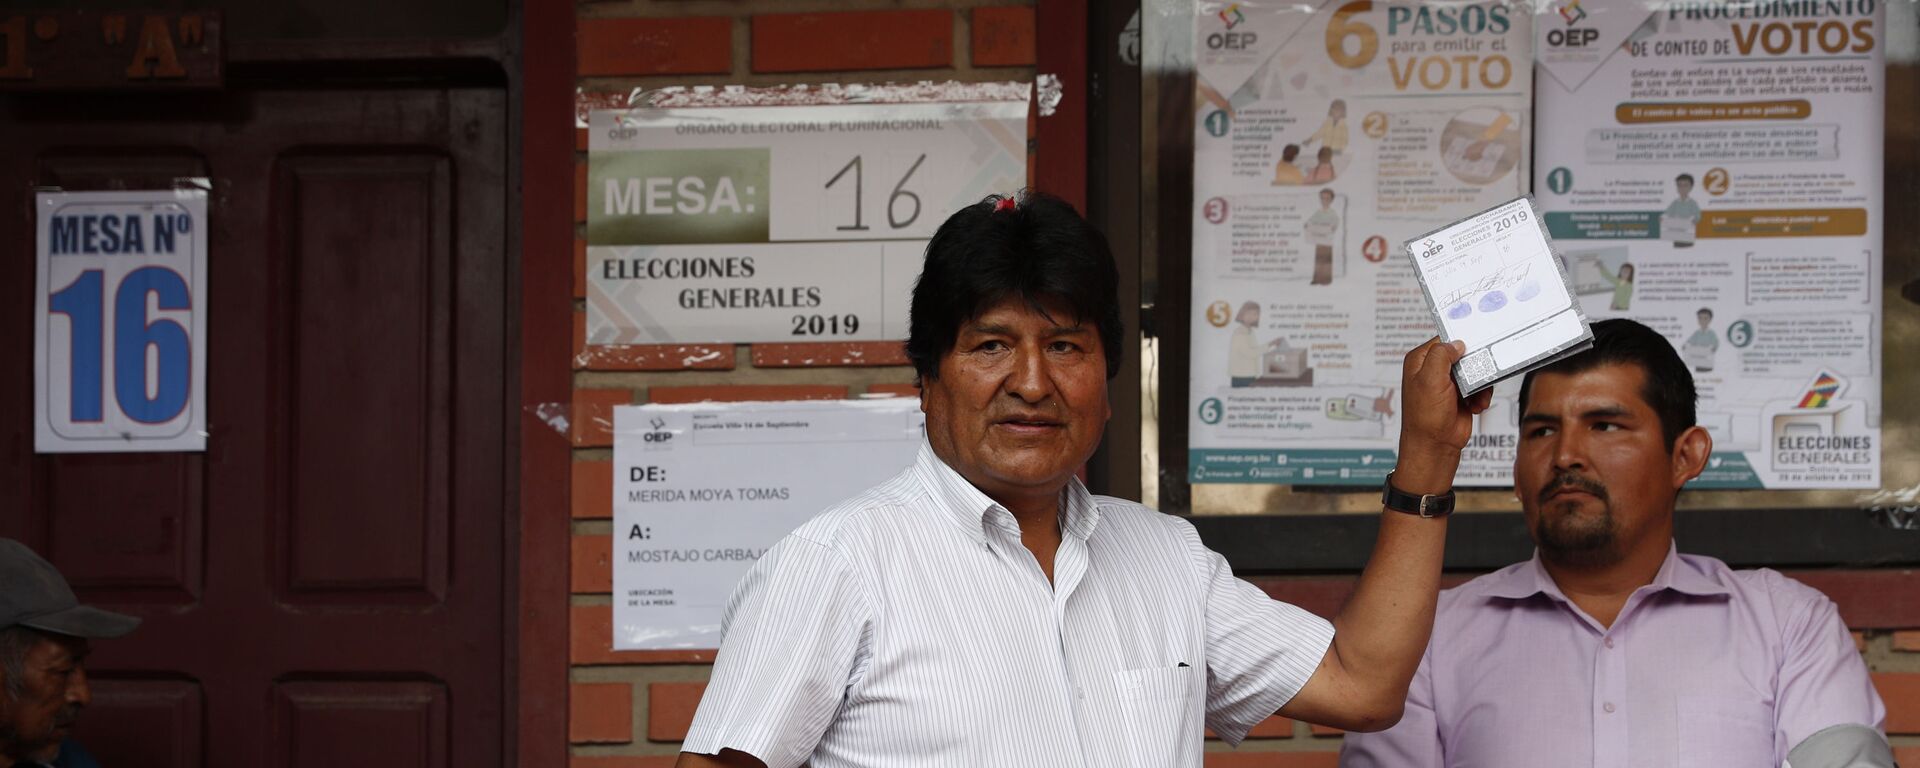 Evo Morales votando durante las elecciones de octubre de 2019 en Bolivia - Sputnik Mundo, 1920, 11.10.2021